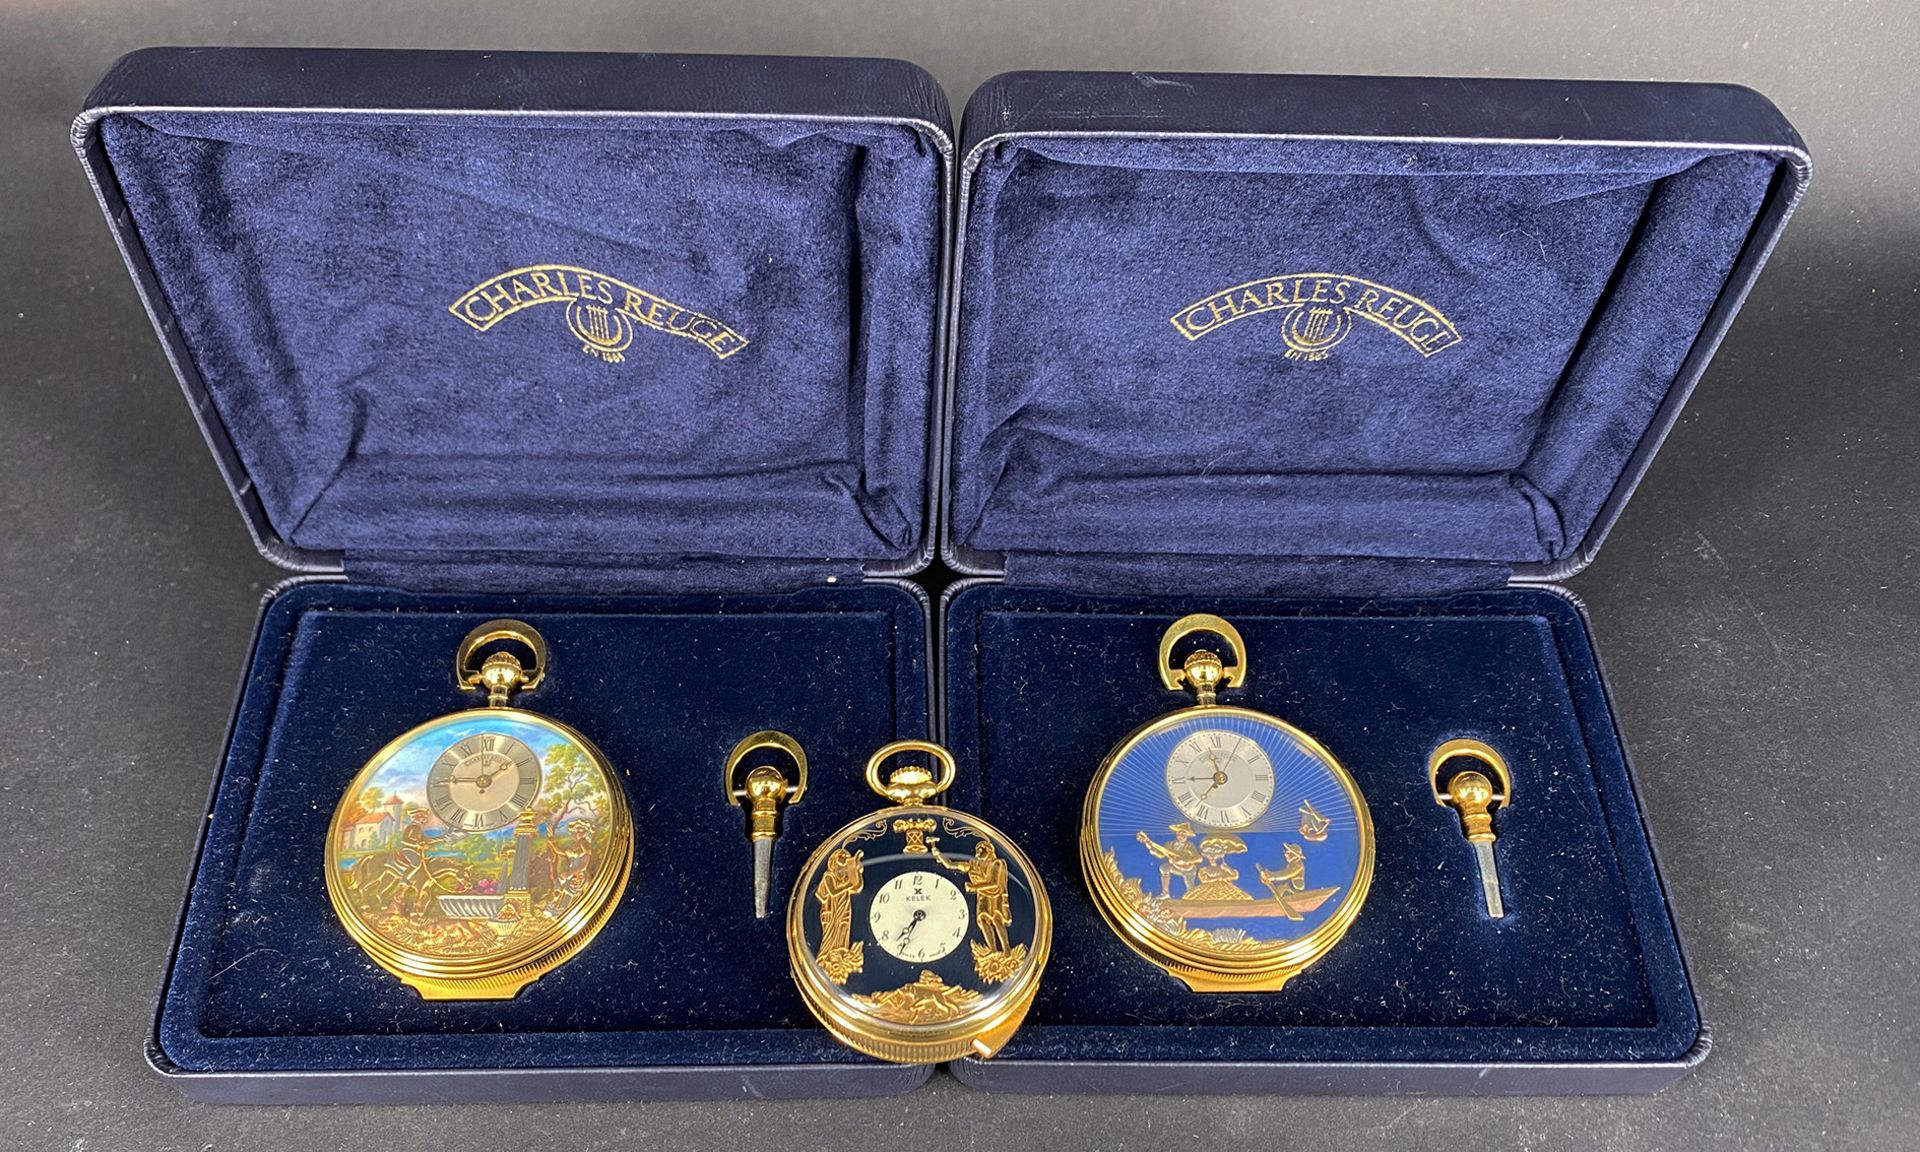 3 Taschenuhren, Reuge und Kelek: 2 TU Charles Reuge (Schweiz) Sainte Croix, Goldplated, mit Spieluhr